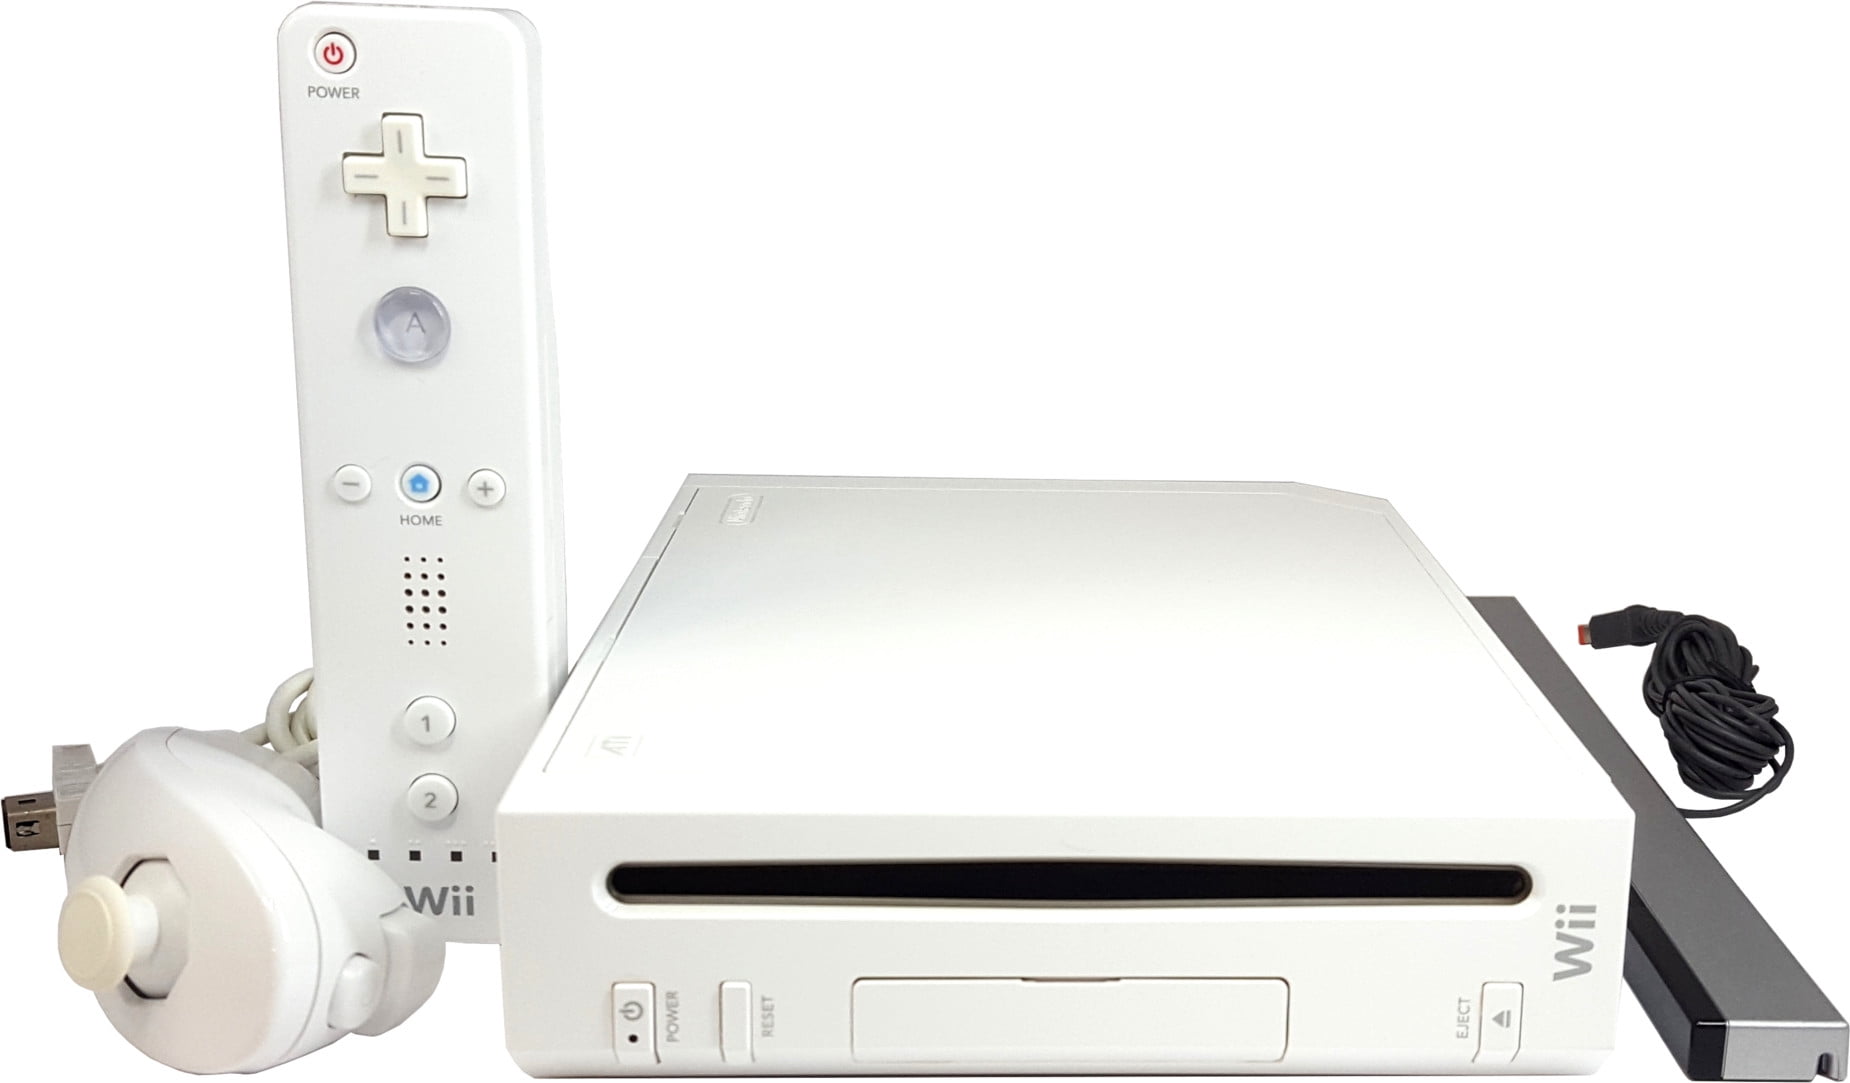 Gameteczone Console Nintendo Wii Branco + Wii Remote - Nintendo